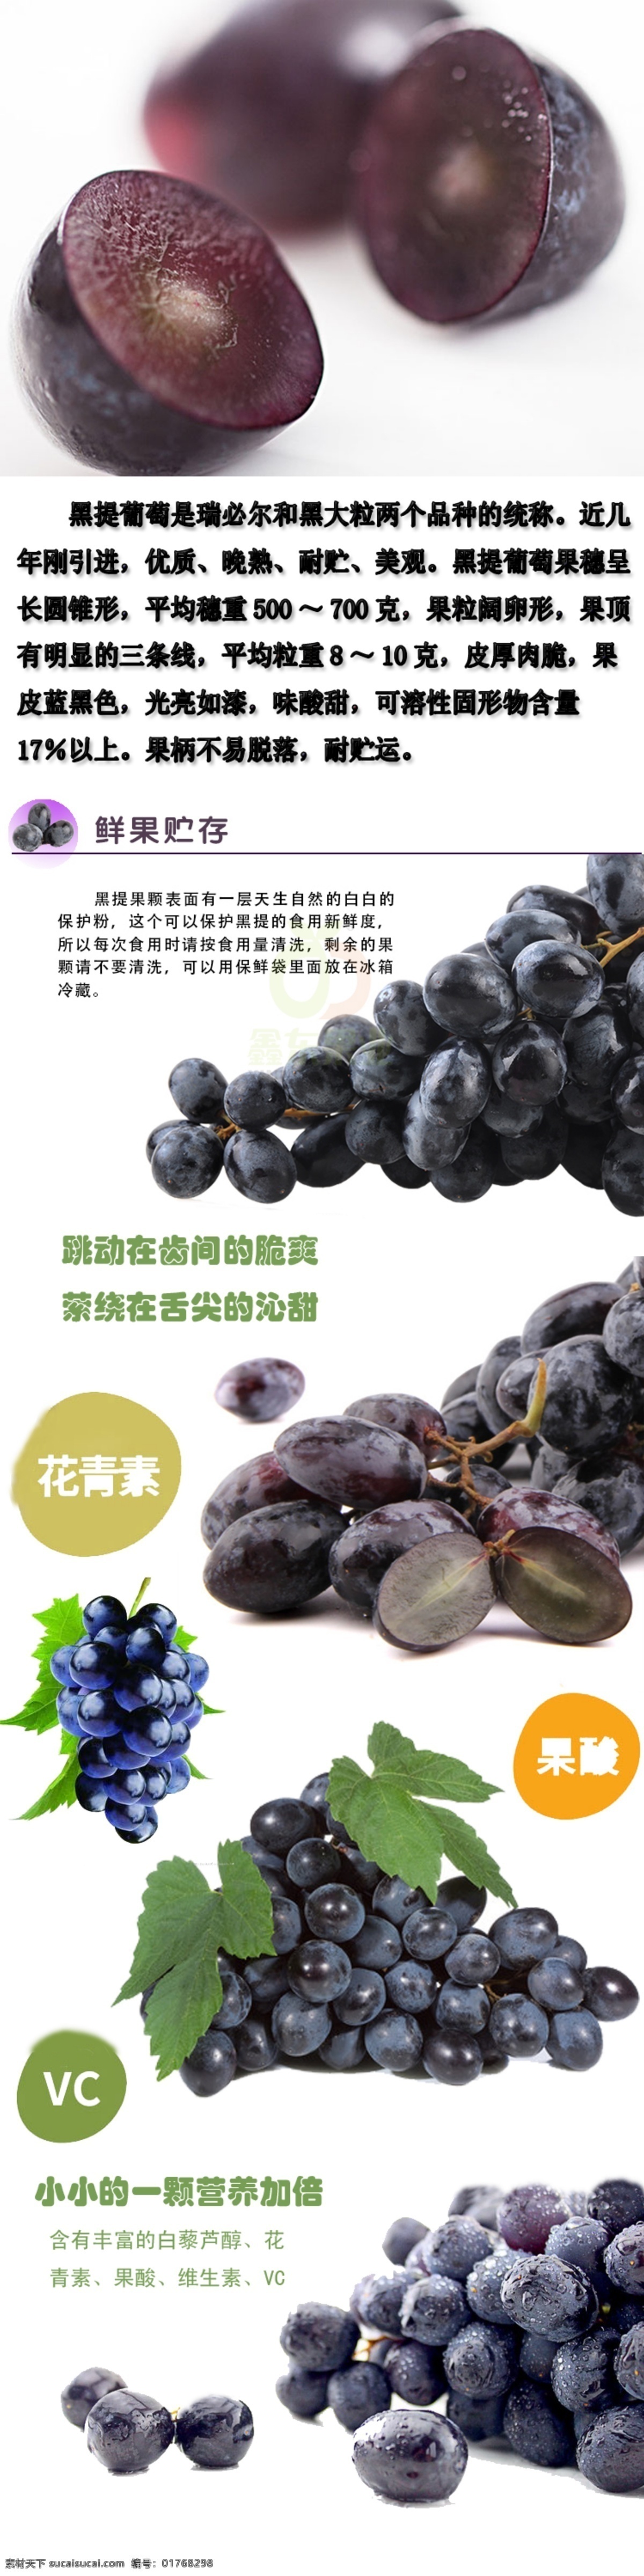 黑提葡萄 素材装修 黑提 葡萄 宣传海报 详细介绍 黑提的营养 白色